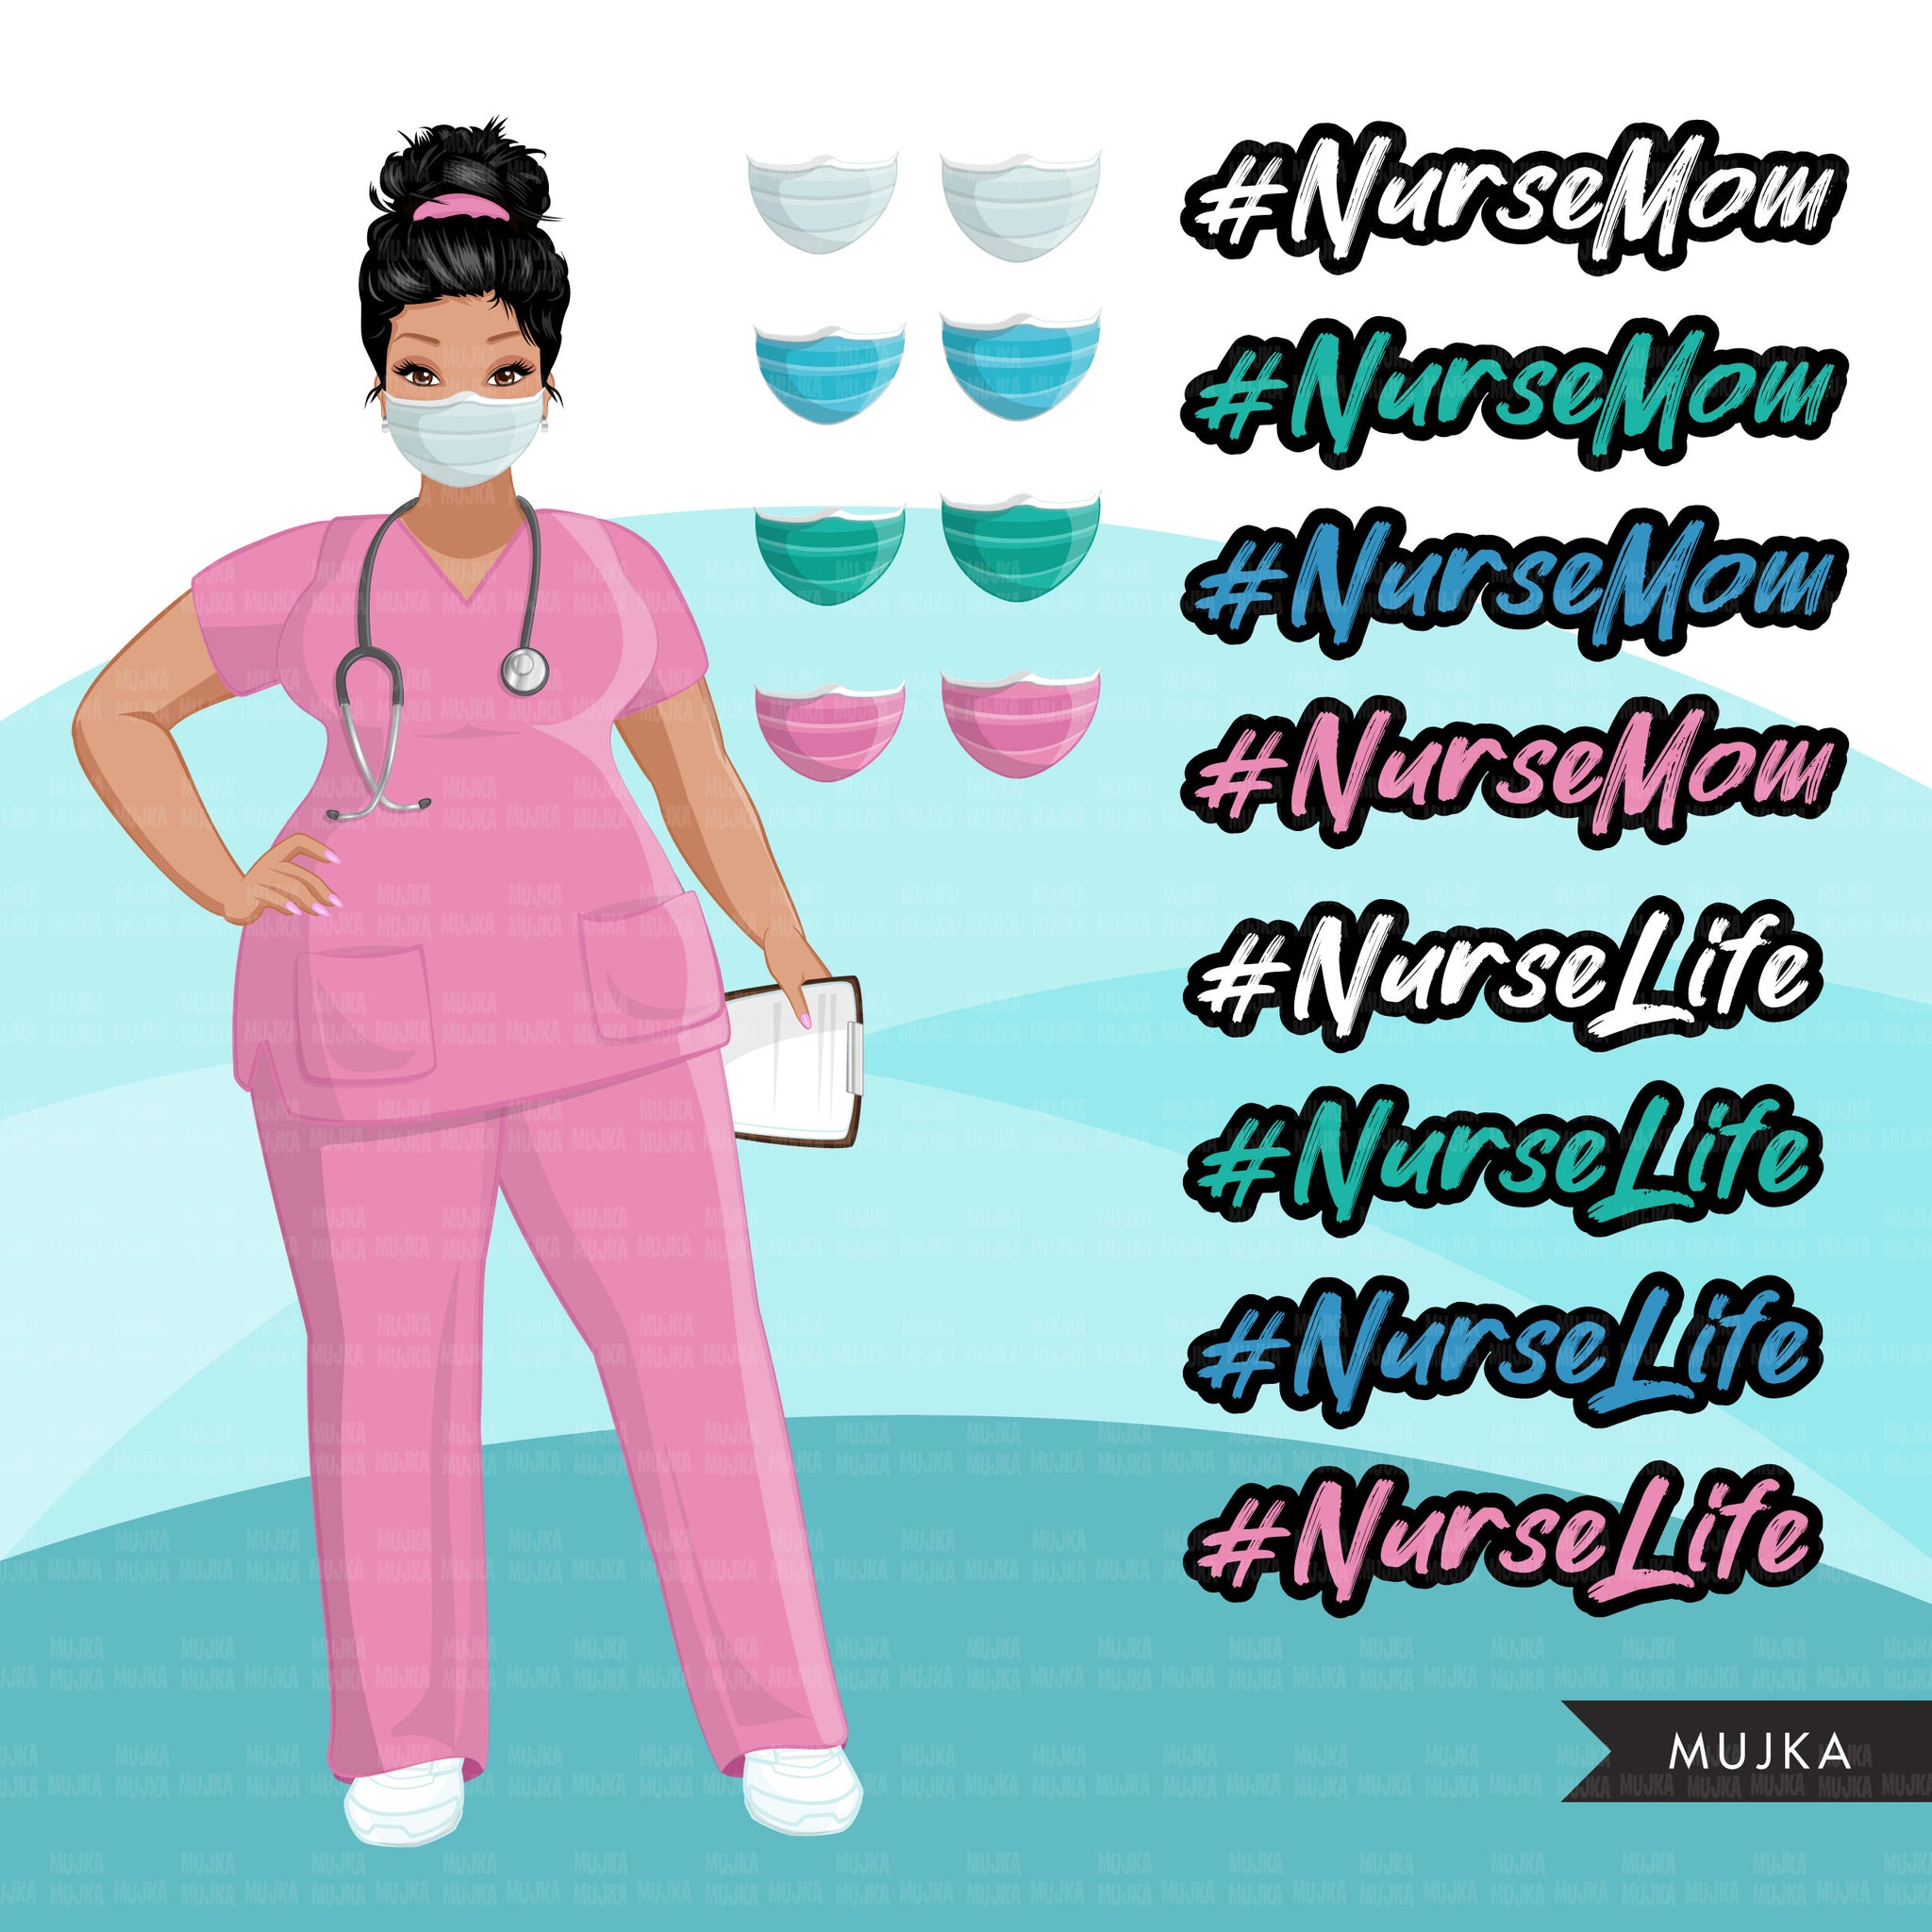 Enfermera clipart BUNDLE, Nurse Life, Nurse Mom, trabajadores médicos, amigos, enfermera negra musulmana, imágenes prediseñadas de sublimación, uso comercial PNG